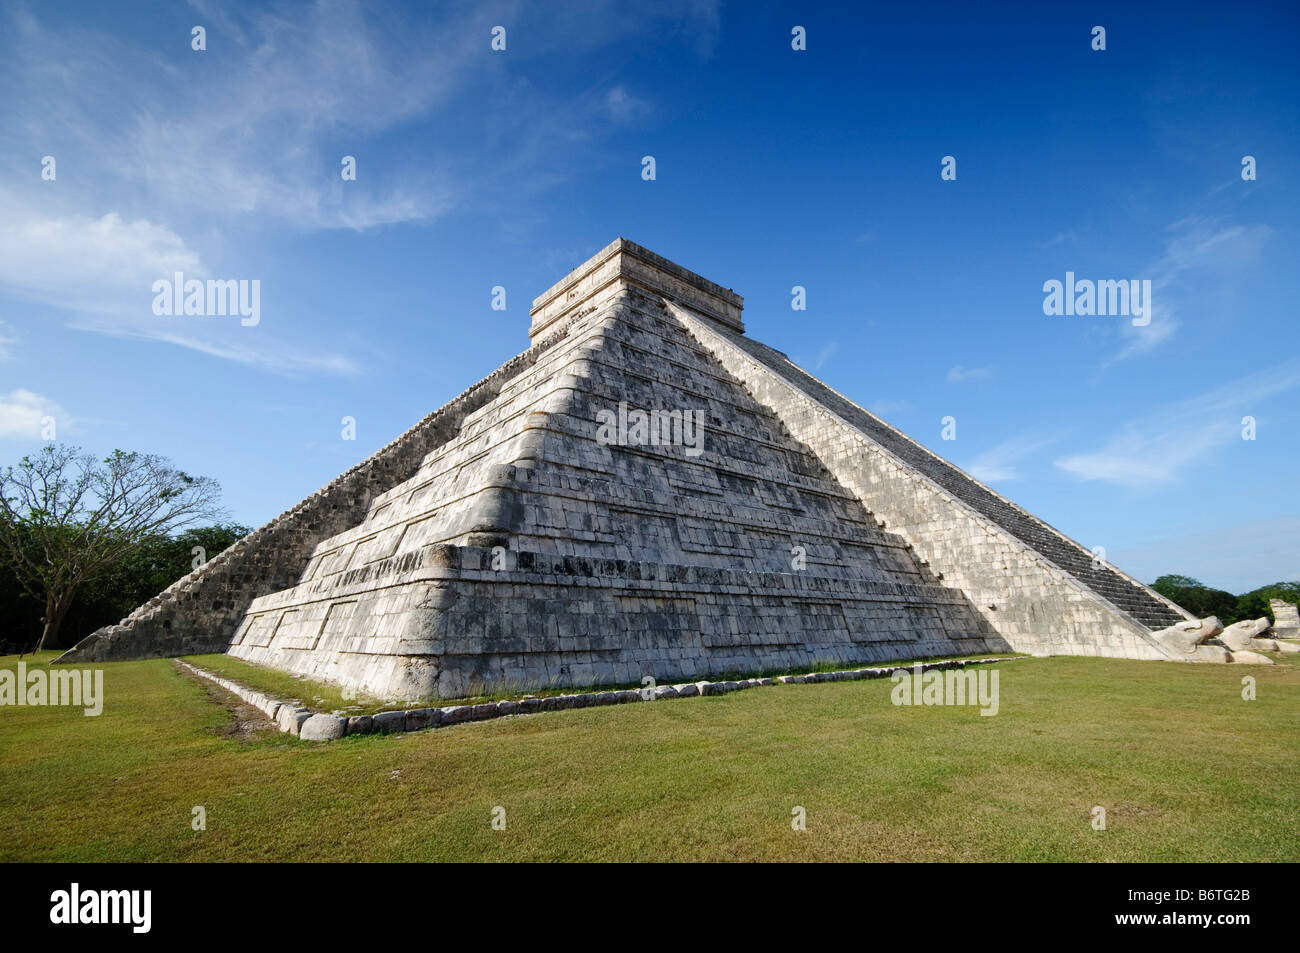 CHICHEN ITZA, Mexique - El Castillo (également connu sous le nom de Temple de Kuklcan) aux ruines mayas anciennes de Chichen Itza, Yucatan, Mexique 081216093012 4429.NEF. Chichen Itza, situé sur la péninsule du Yucatan au Mexique, est un site archéologique important présentant la riche histoire et les connaissances scientifiques avancées de la civilisation maya antique. Il est plus connu pour la Pyramide Kukulkan, ou « El Castillo », une structure à quatre côtés avec 91 marches de chaque côté, culminant en une seule étape au sommet pour représenter les 365 jours de l'année solaire. Banque D'Images